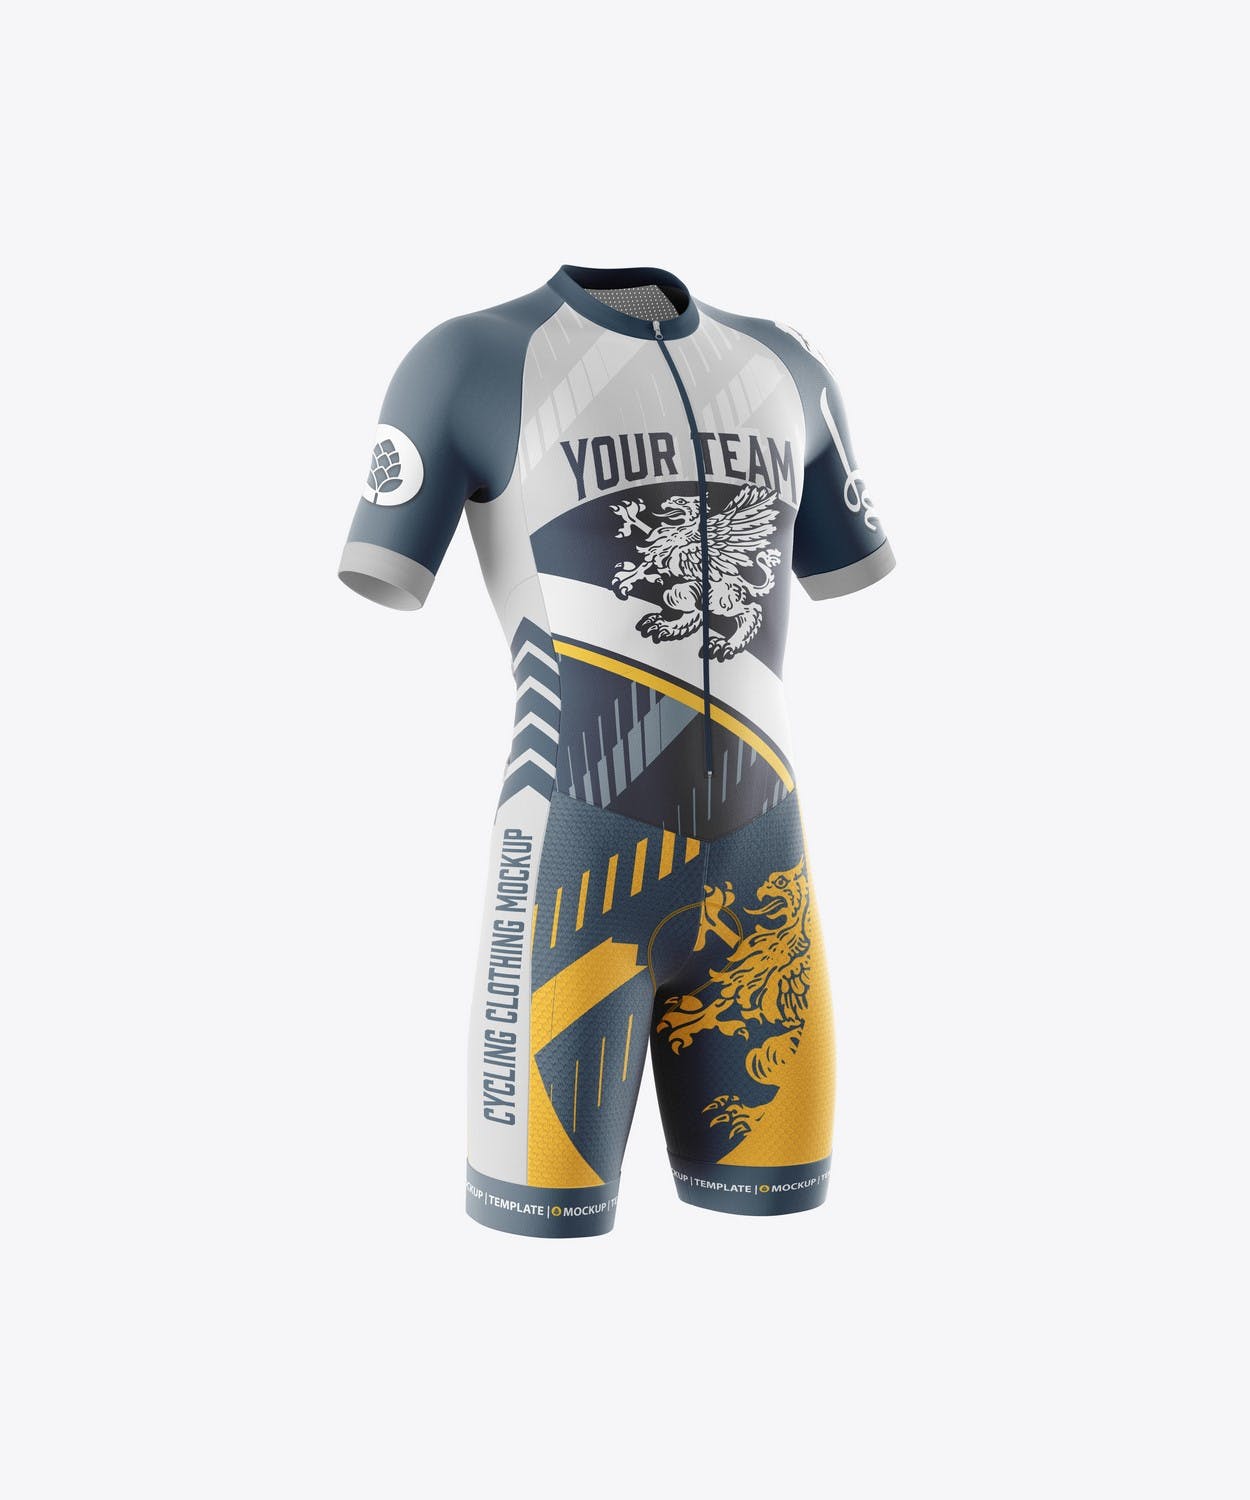 男子运动套装自行车服装品牌设计样机 Sport Cycling Suit for Men Mockup 样机素材 第3张